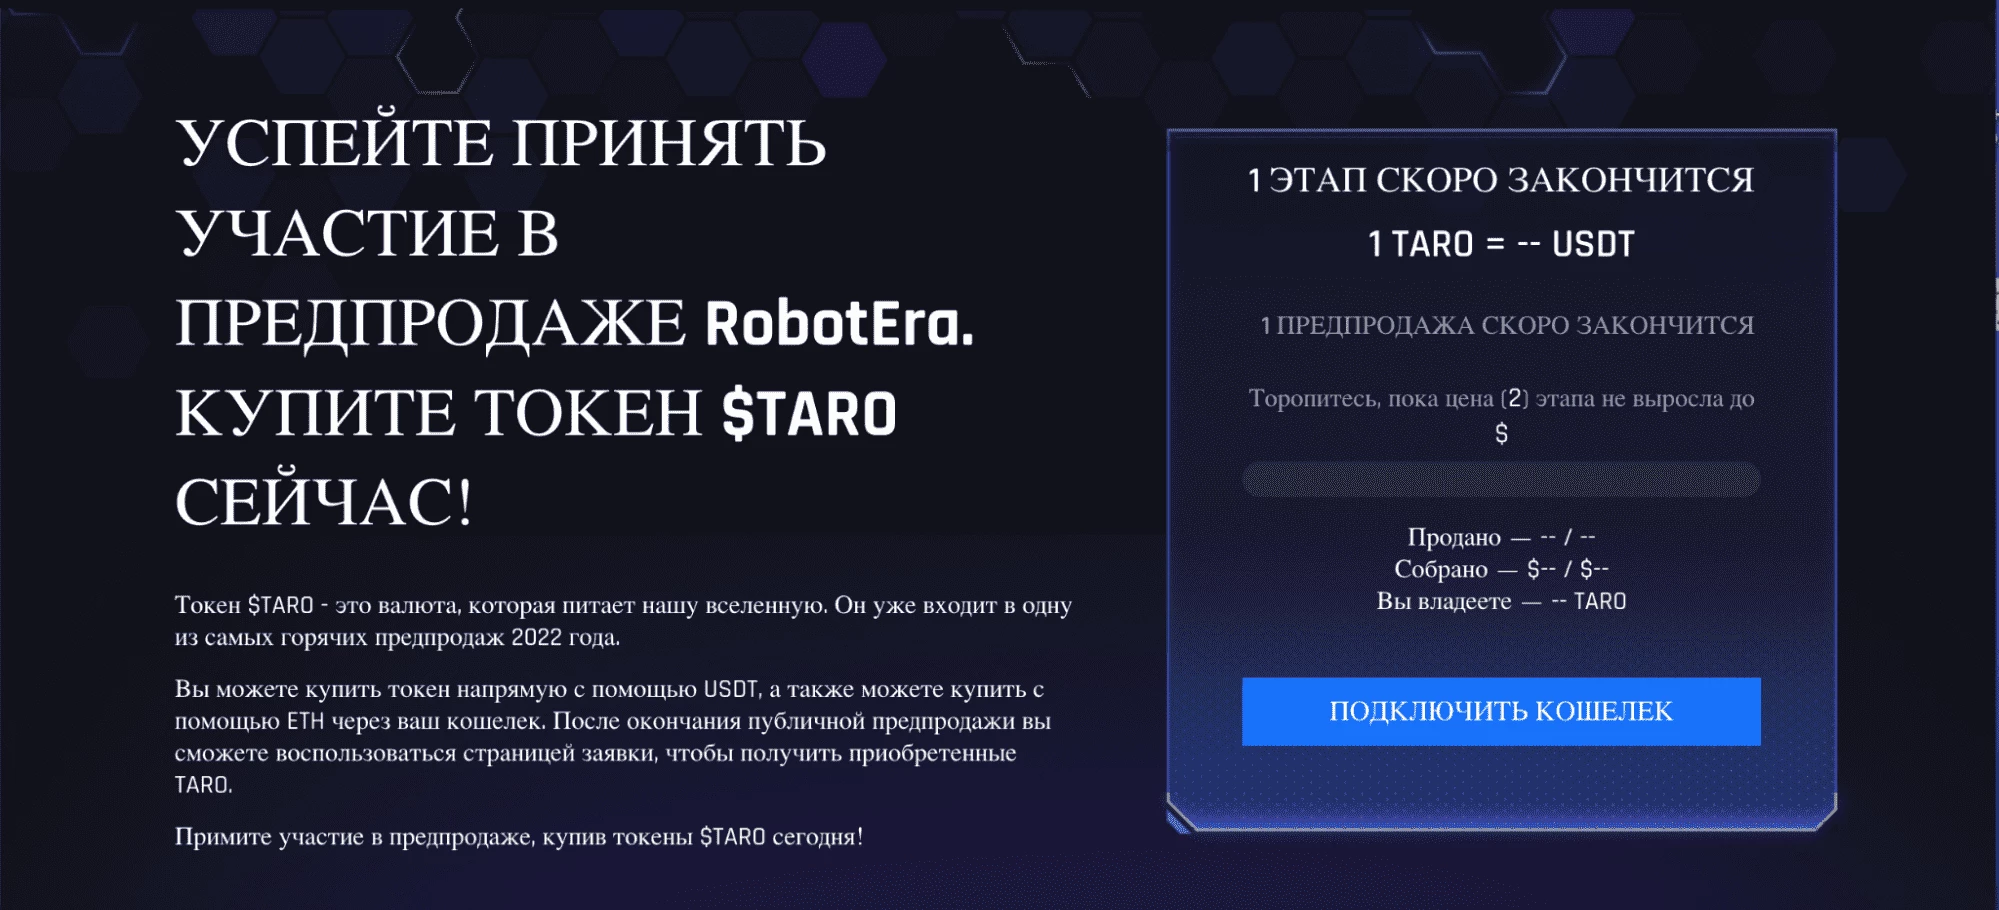 Предпродажная страница RobotEra